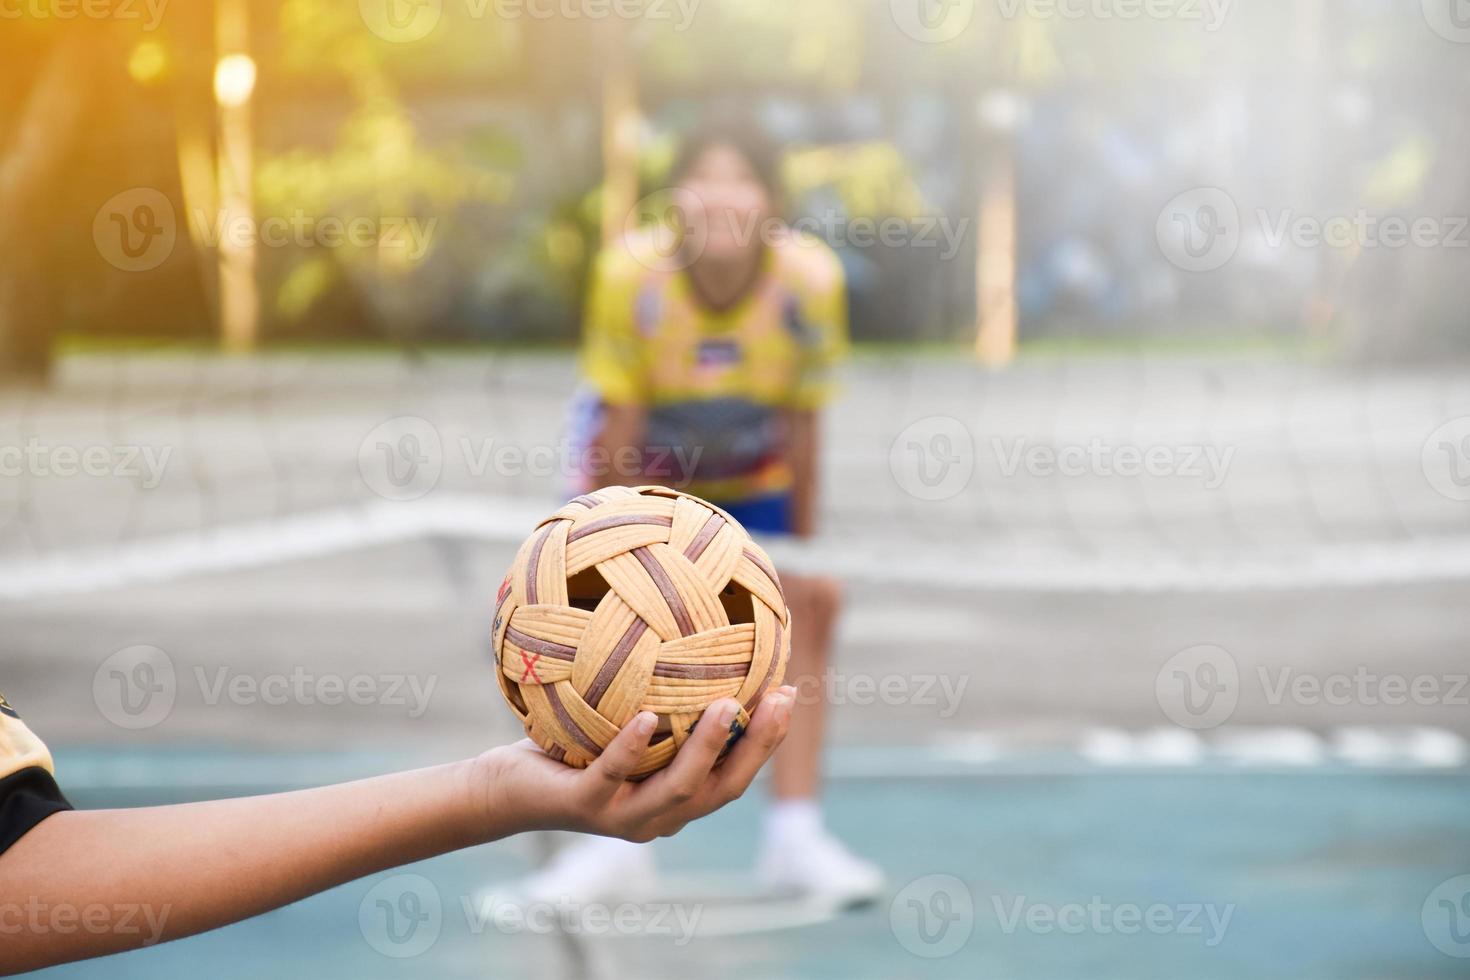 sepak takraw ball, sport traditionnel des pays d'asie du sud-est, tenant dans la main une jeune joueuse sepak takraw asiatique devant le filet avant de la lancer à un autre joueur pour qu'il passe par-dessus le filet. photo